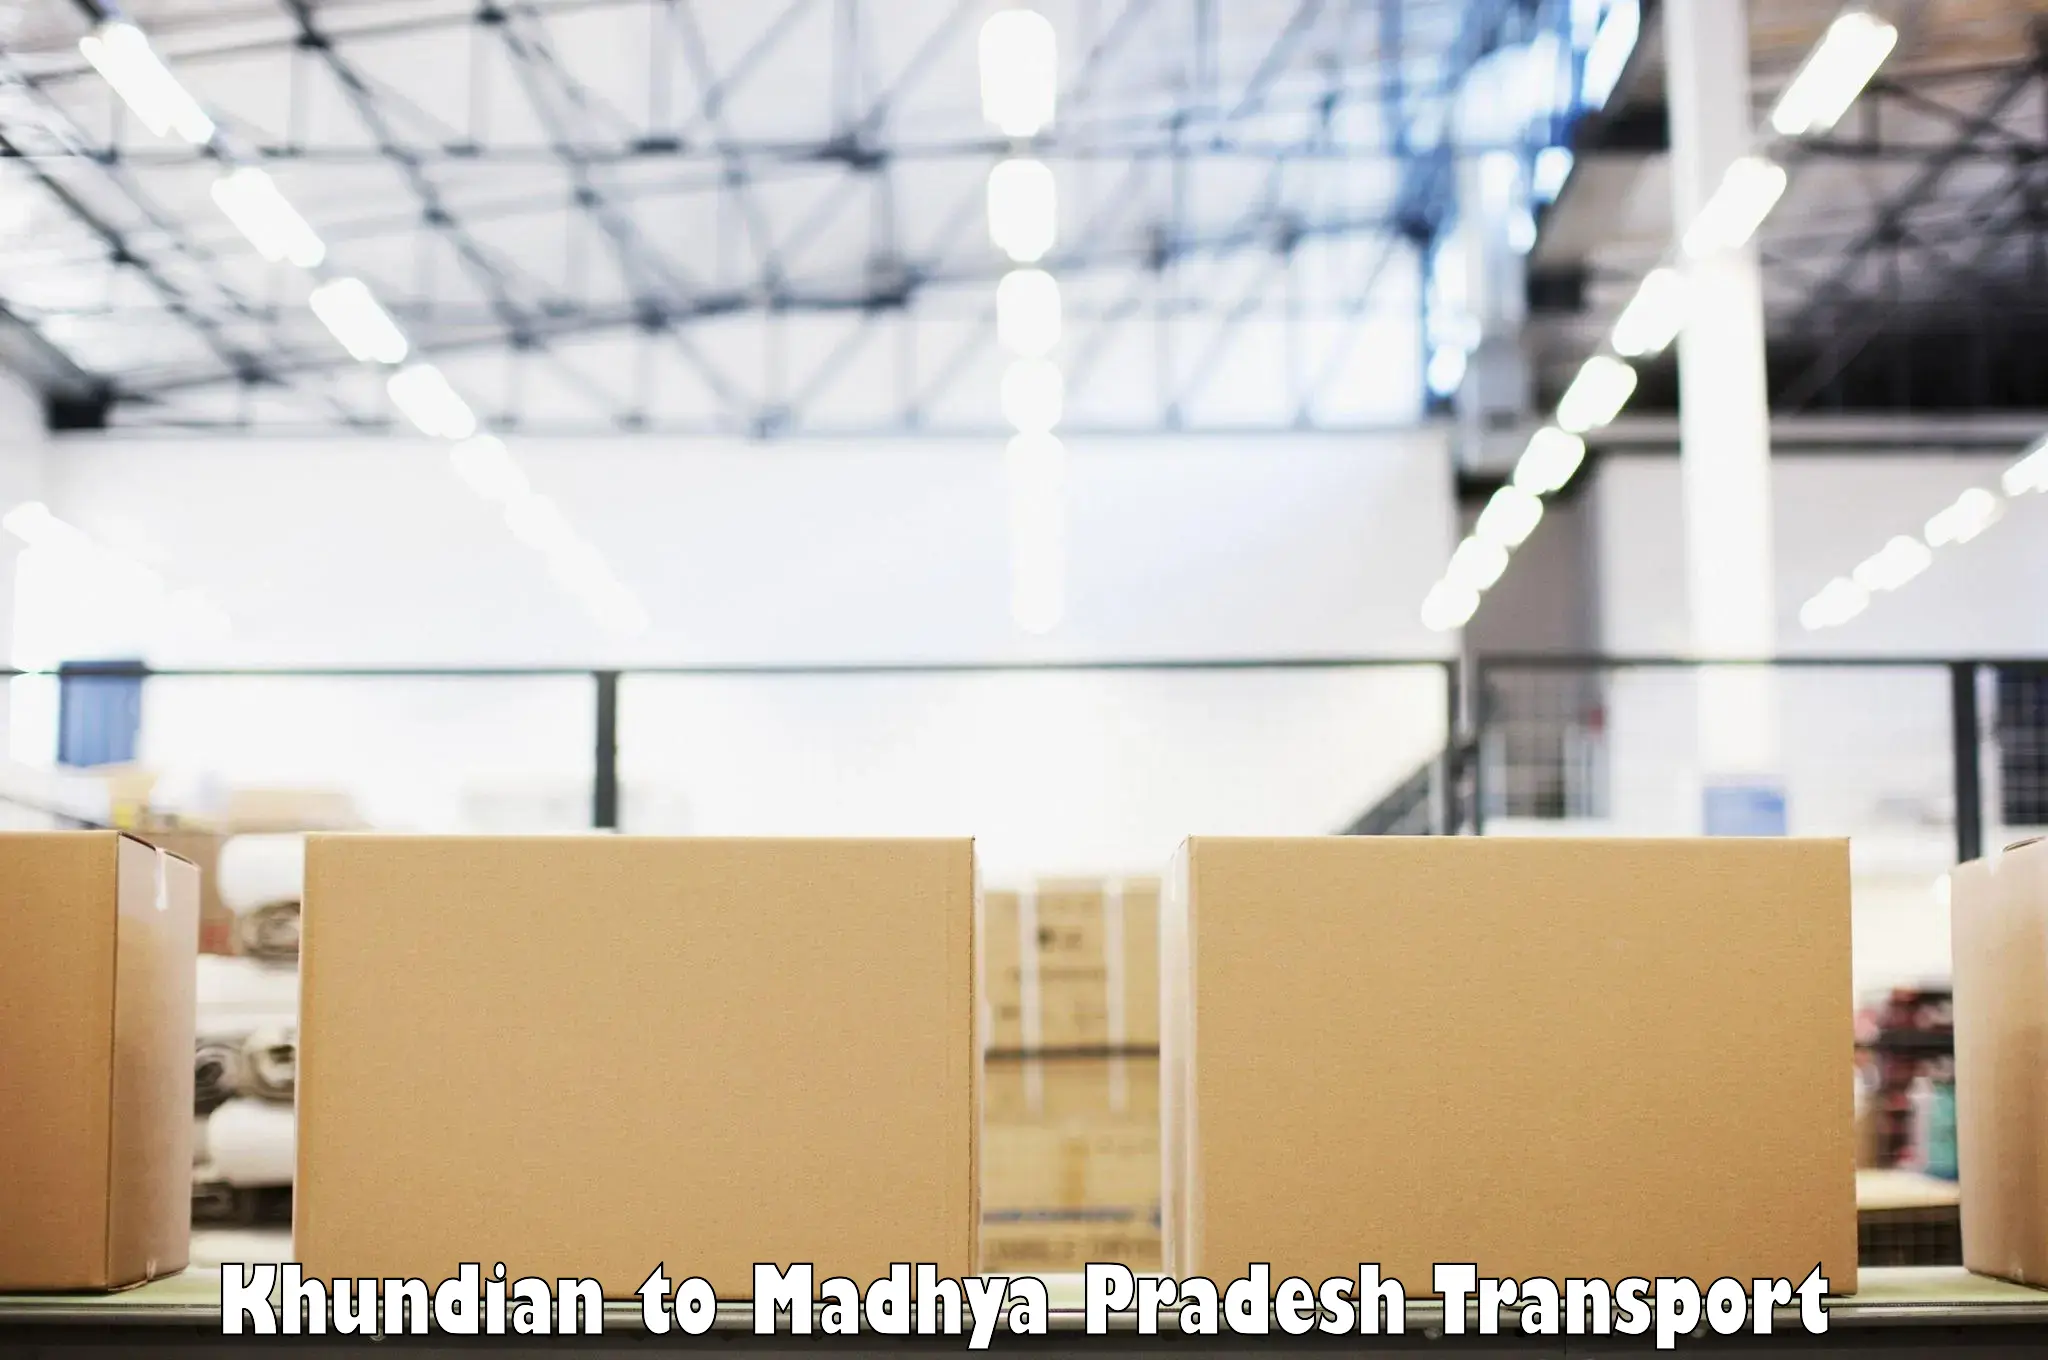 Shipping partner Khundian to Chhindwara